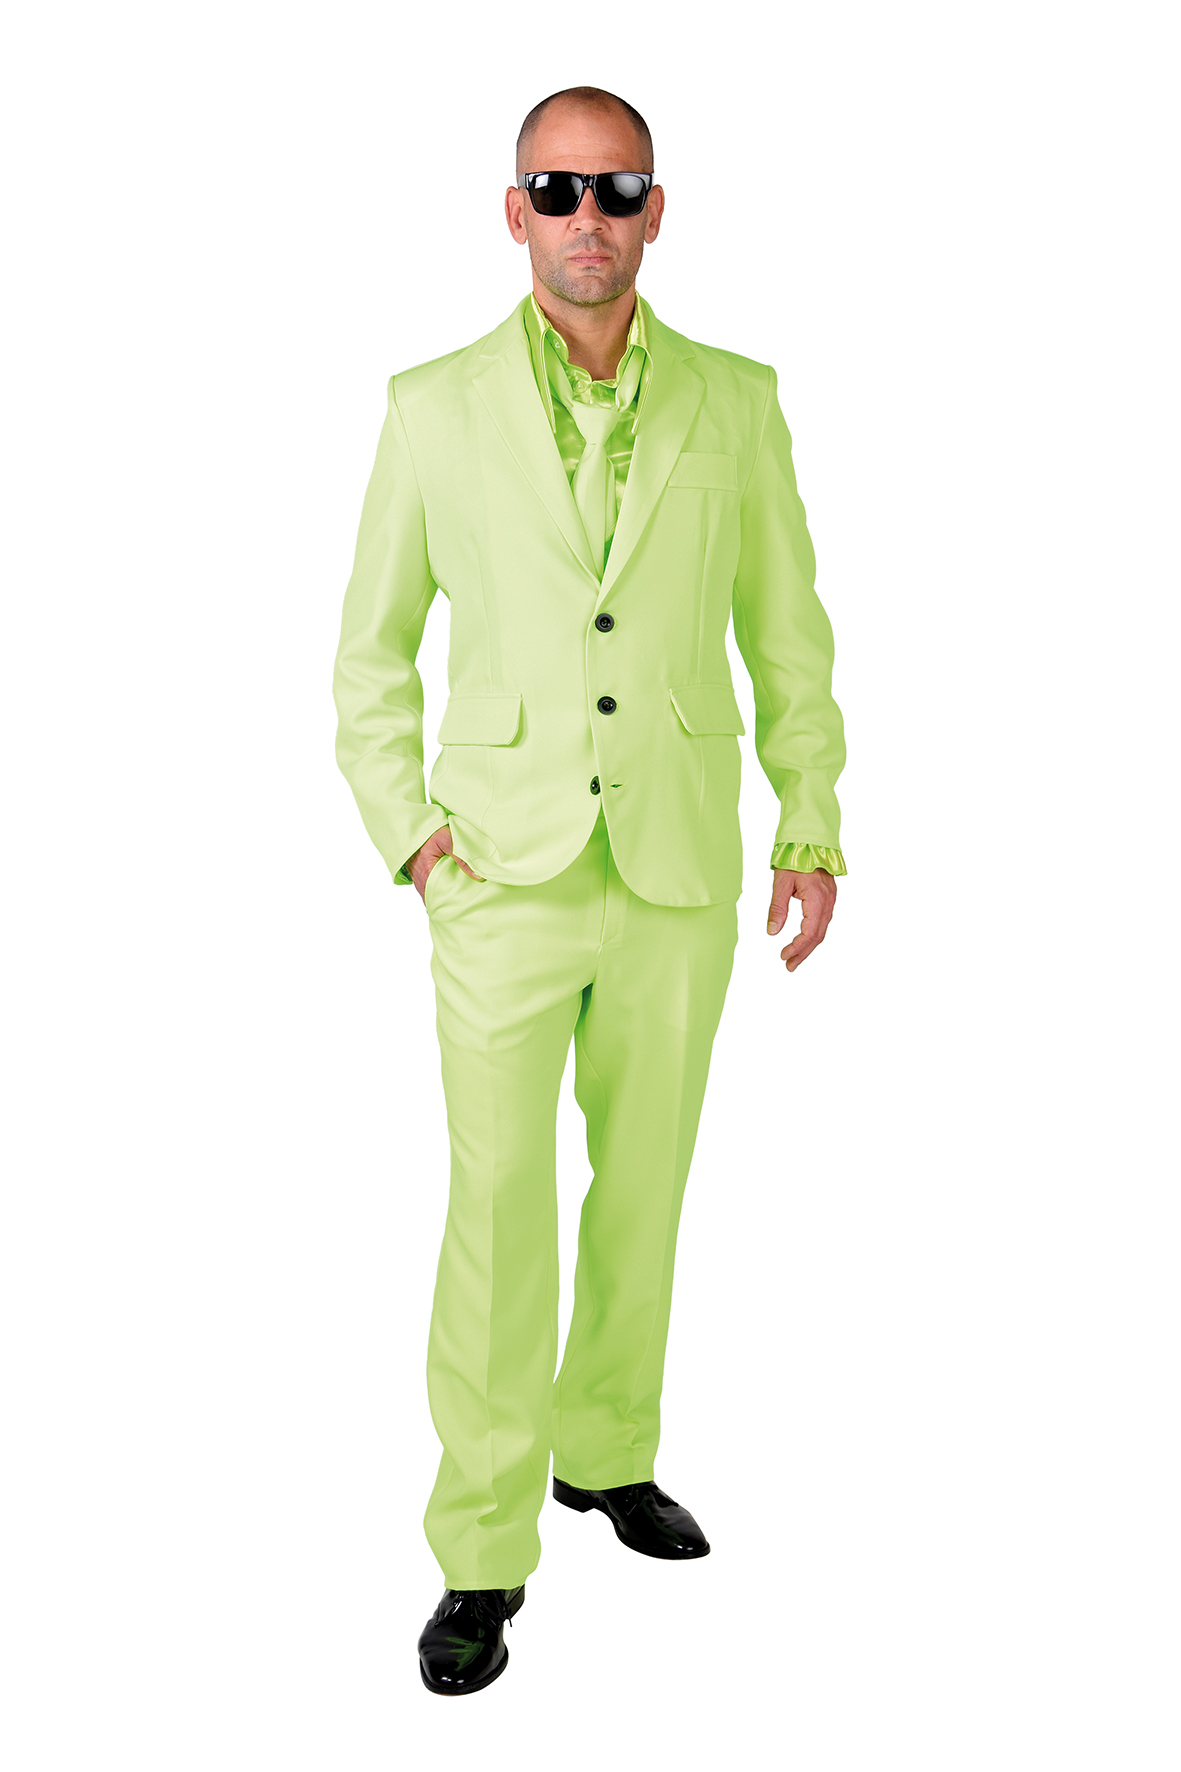 Guggenheim Museum Modernisering Instrueren Kostuum Magic Suit Lime Groen Heren - Ooms Feestwinkel